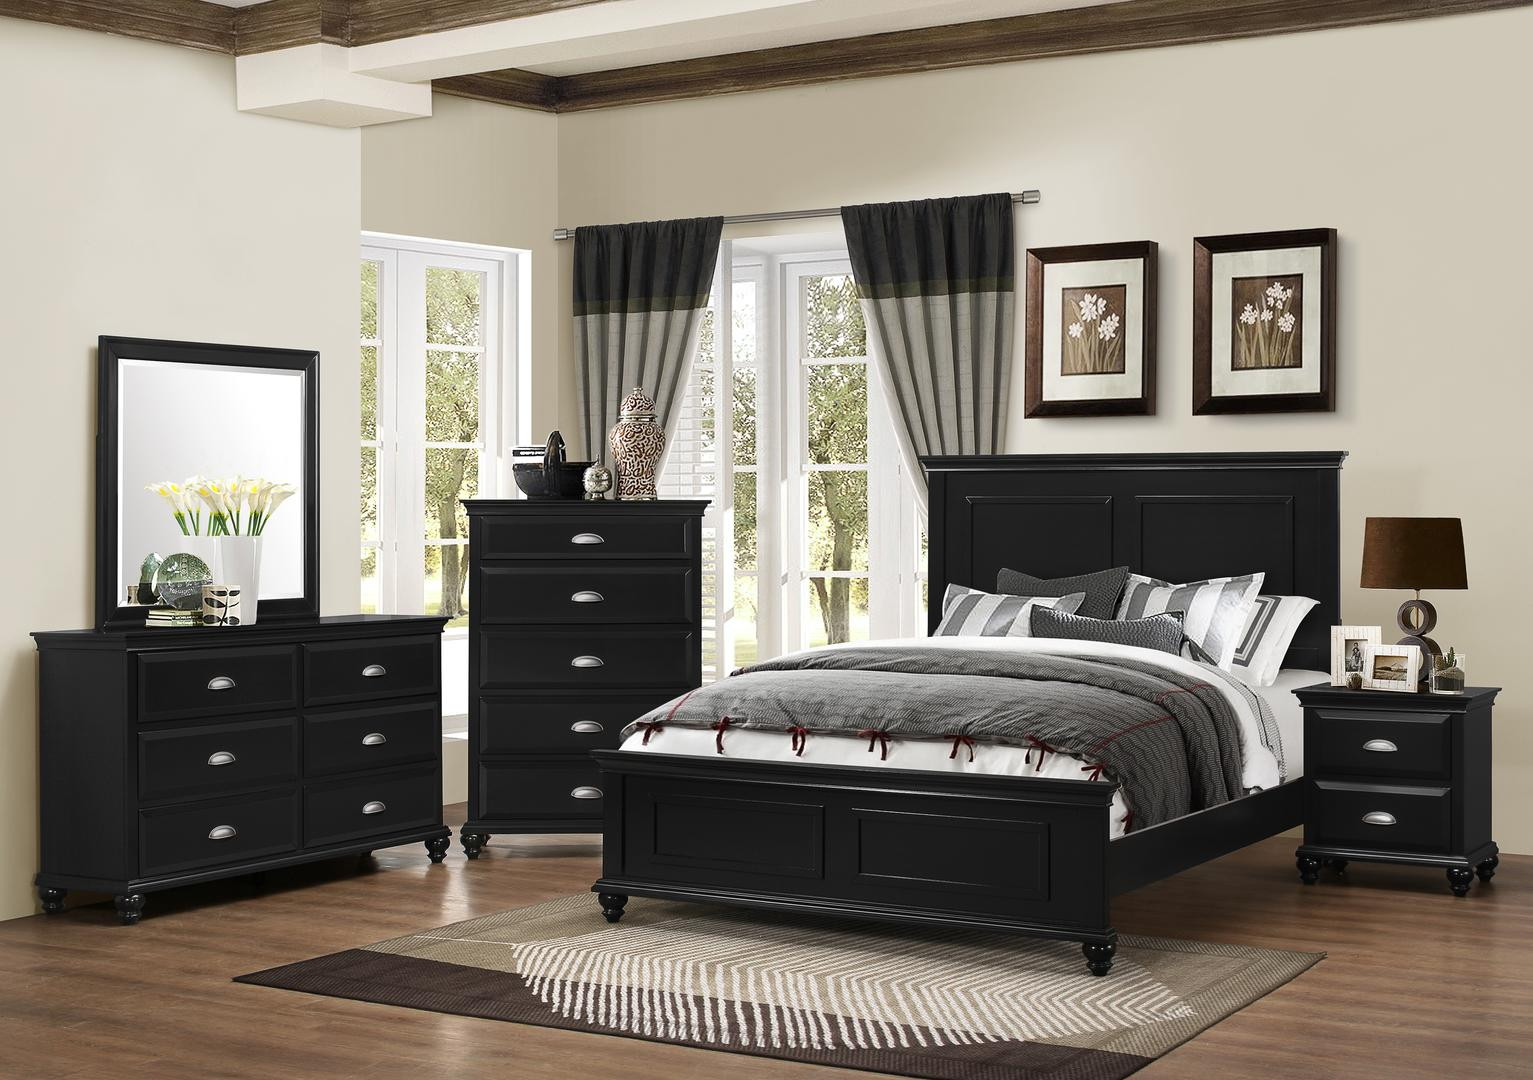 Lane Furniture Nantucket 5 Piece Queen Size Bedroom Set within measurements 1533 X 1080